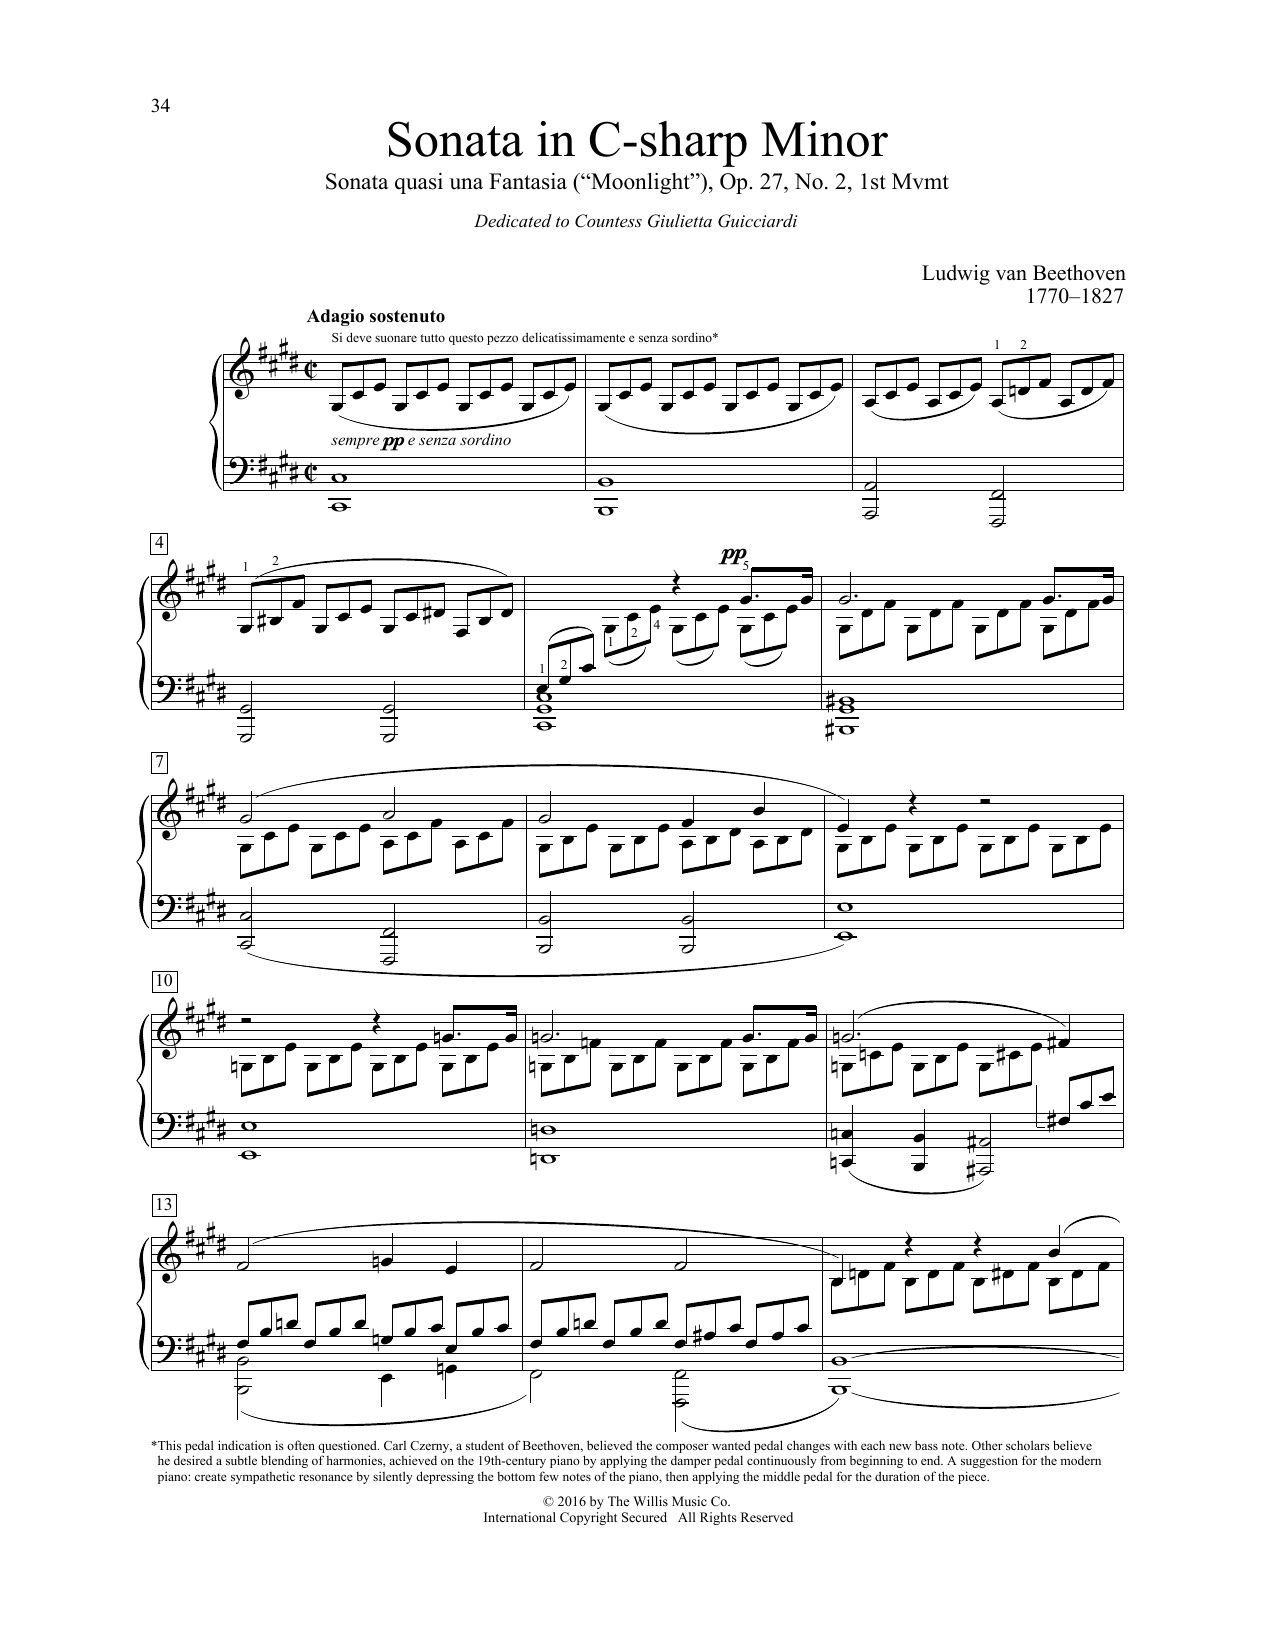 Sonata In C-Sharp Minor, Sonata quasi una Fantasia (